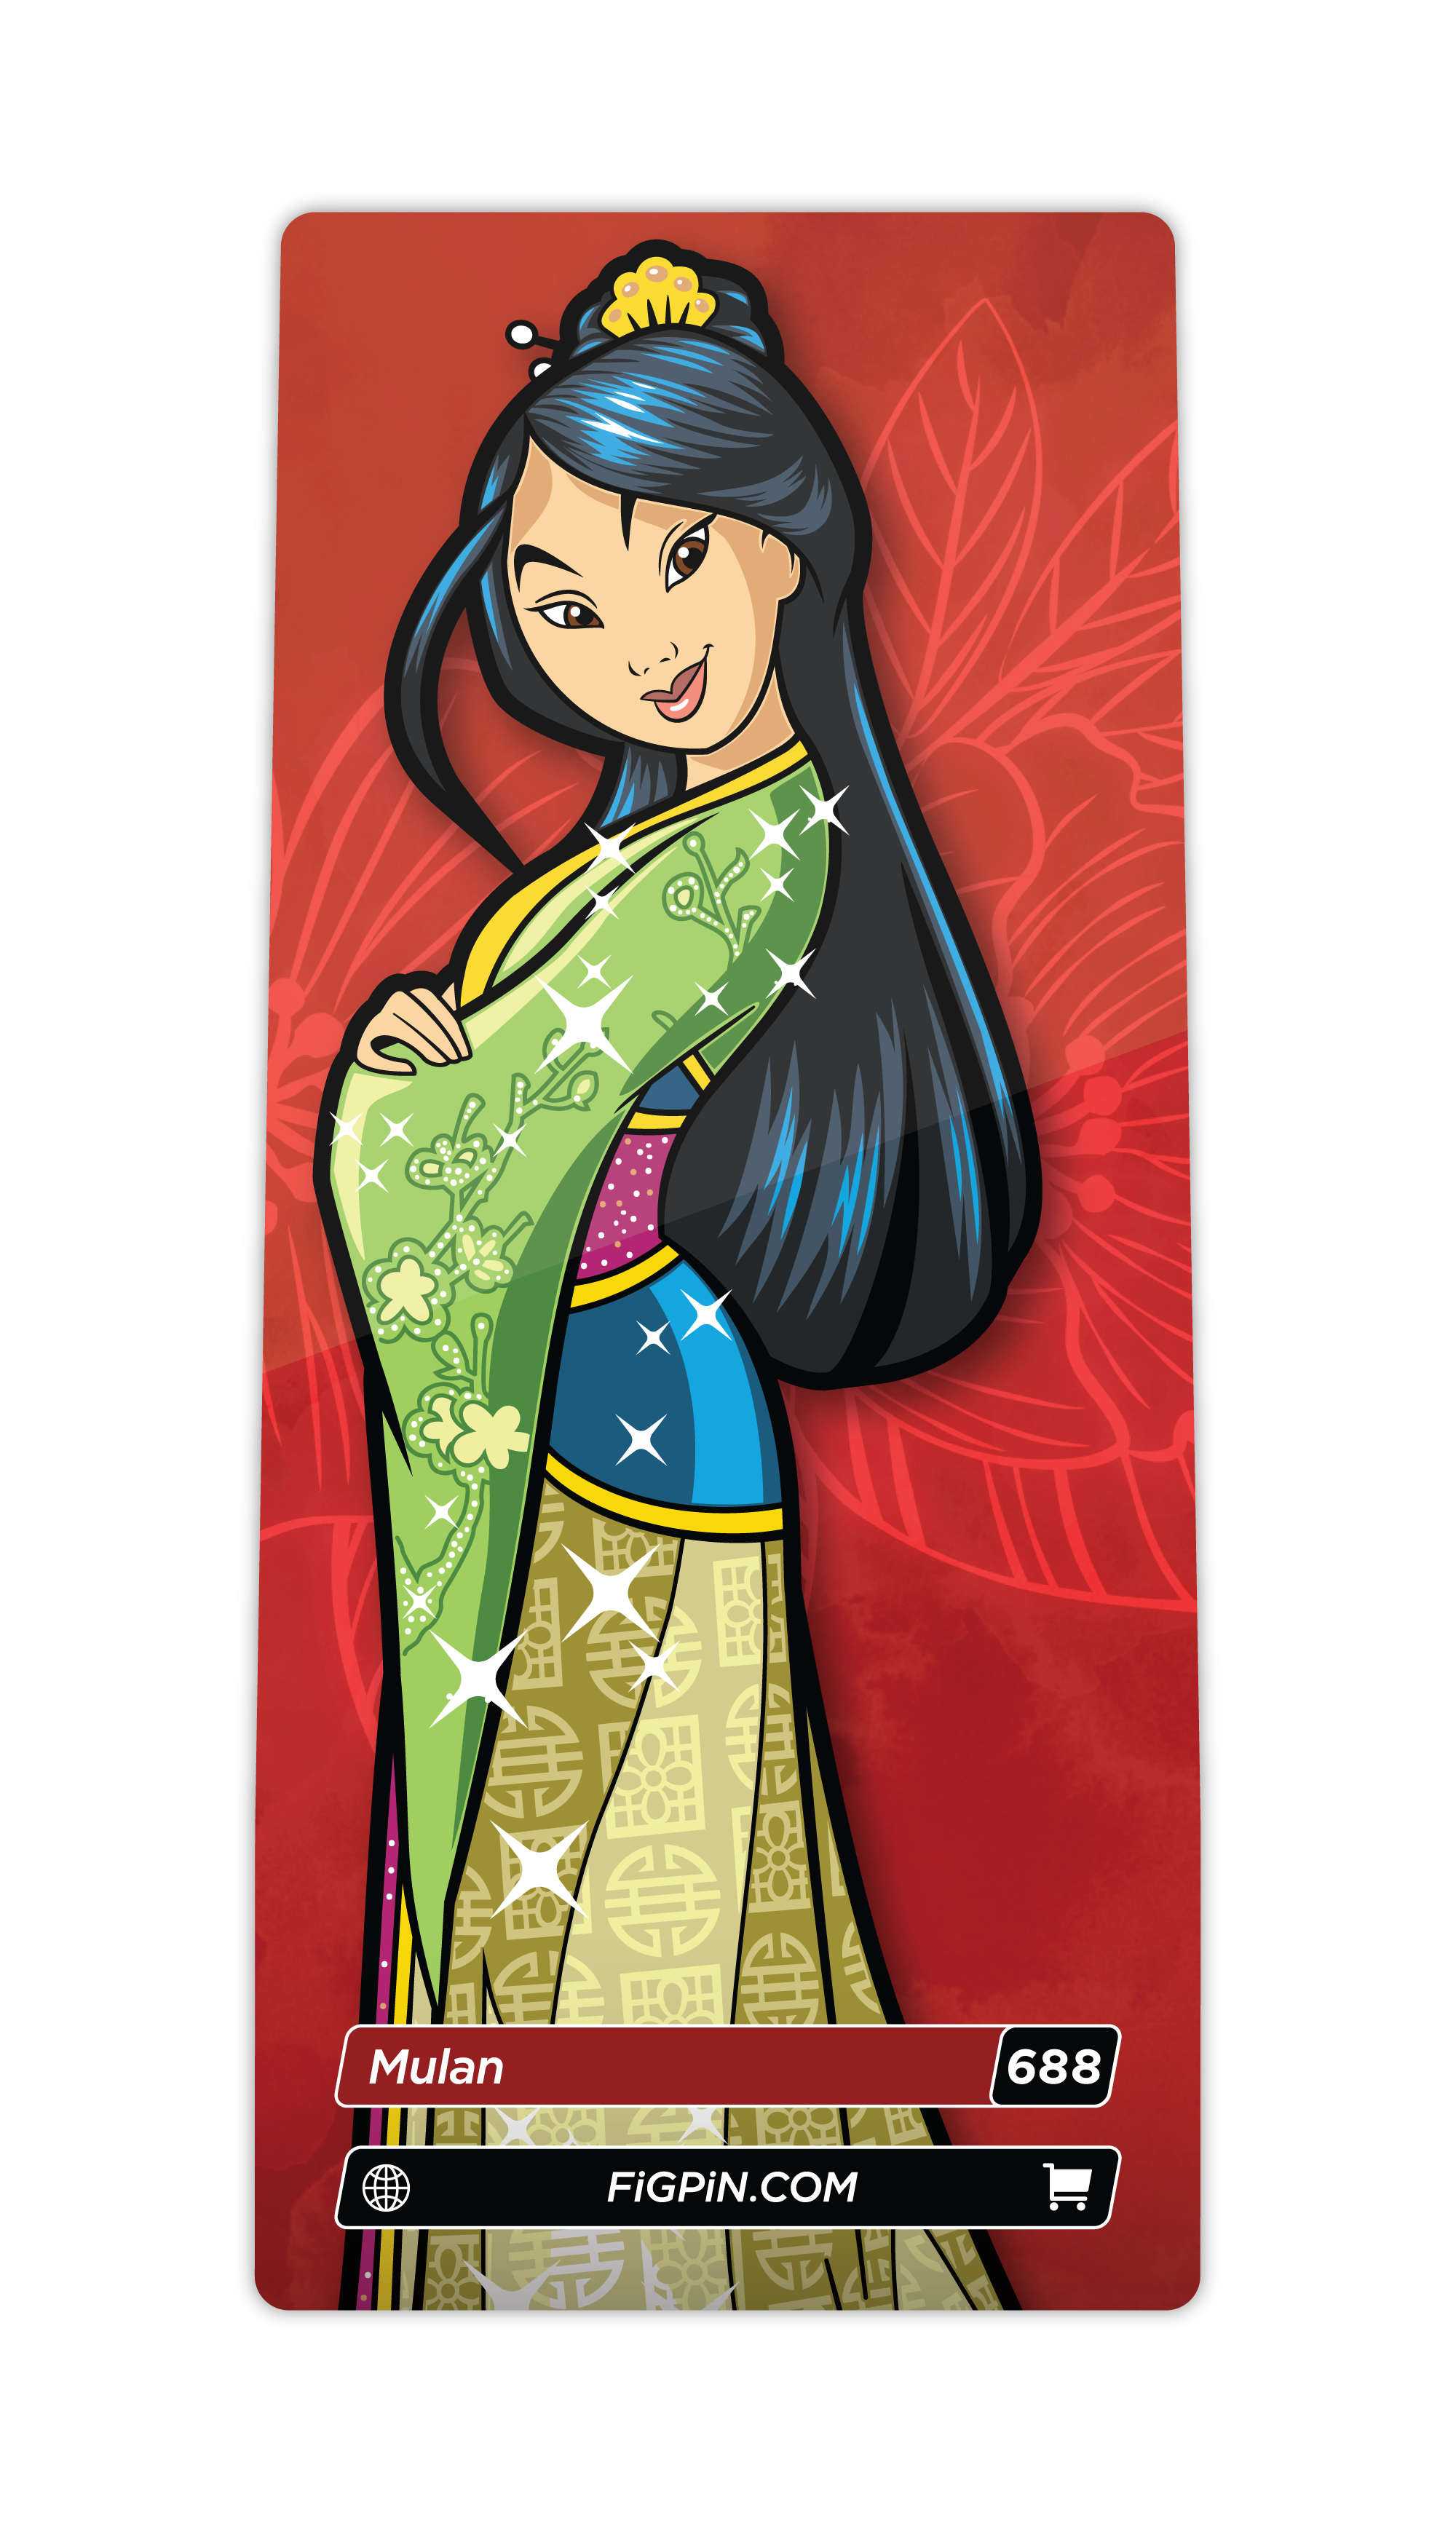 Mulan (688)